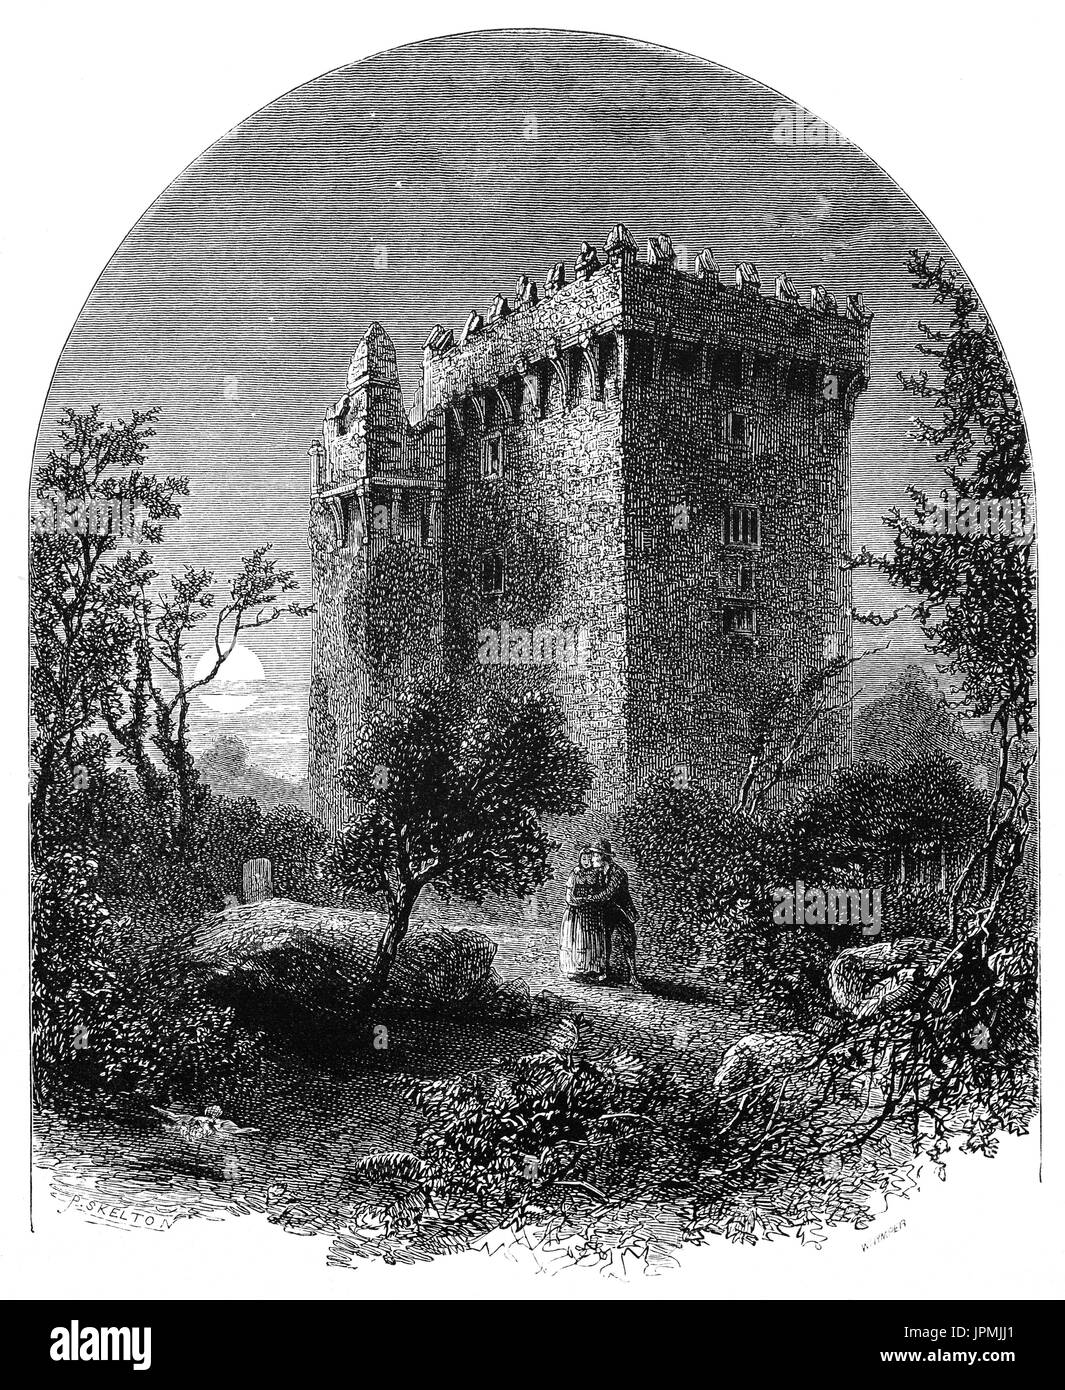 1870 : le château de Blarney, une forteresse médiévale à Blarney. Le donjon a été construit par la dynastie de Muskerry de MacCarthy, une branche cadette des rois de Desmond, et date de 1446. La pierre de Blarney où les touristes visitant le château peut se bloquer à l'envers sur un pic à baiser la pierre, qui est dit pour donner le don de l'éloquence. est parmi les mâchicoulis du château. Le comté de Cork, Irlande Banque D'Images